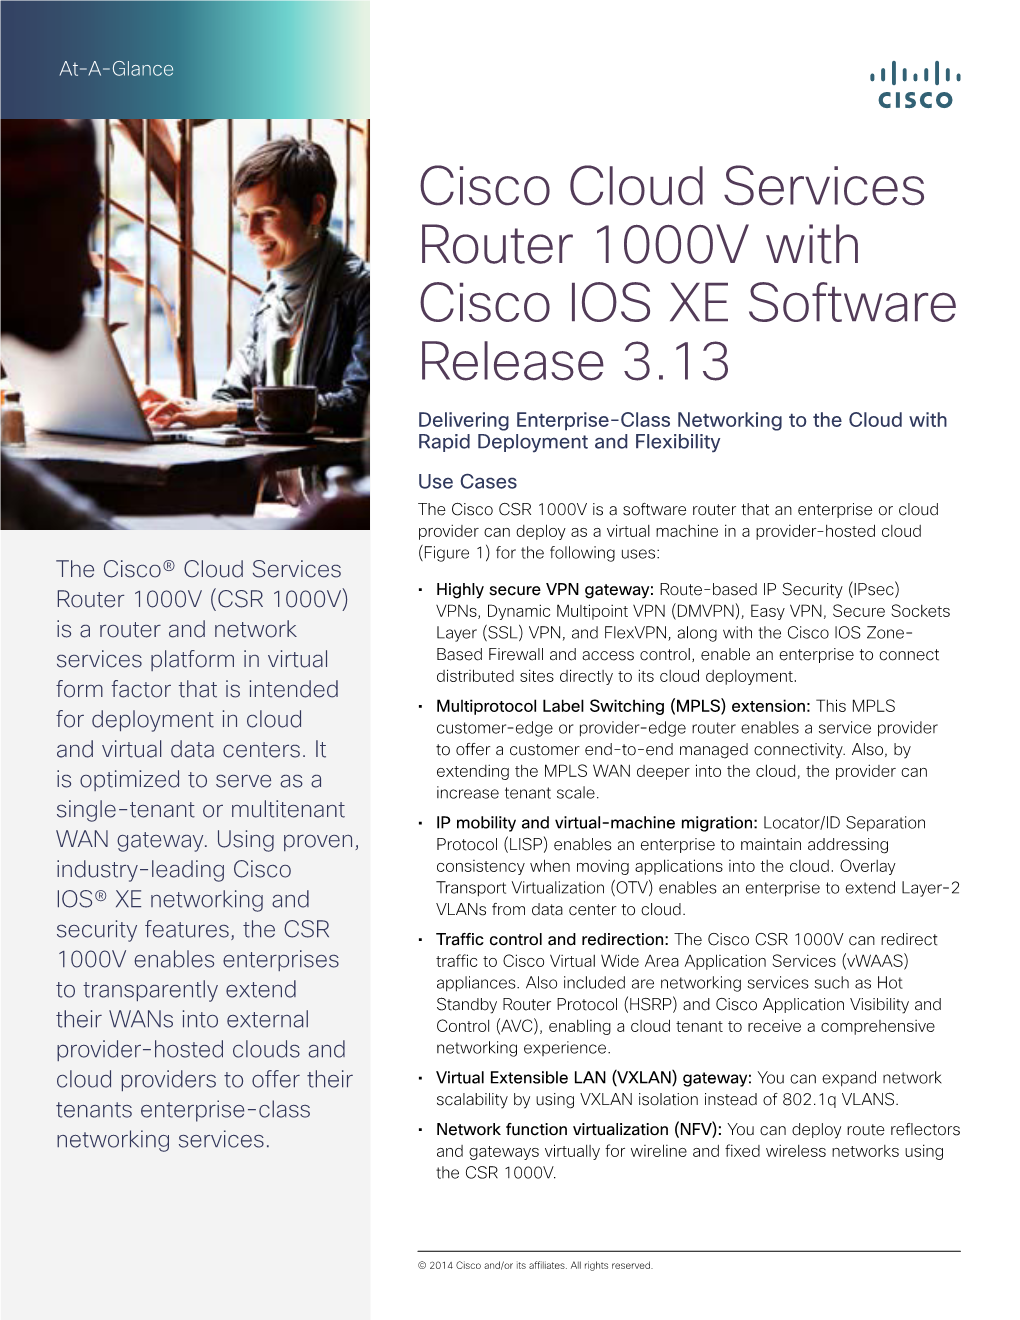 Cisco Cloud Services Router 1000V with Cisco IOS XE Software